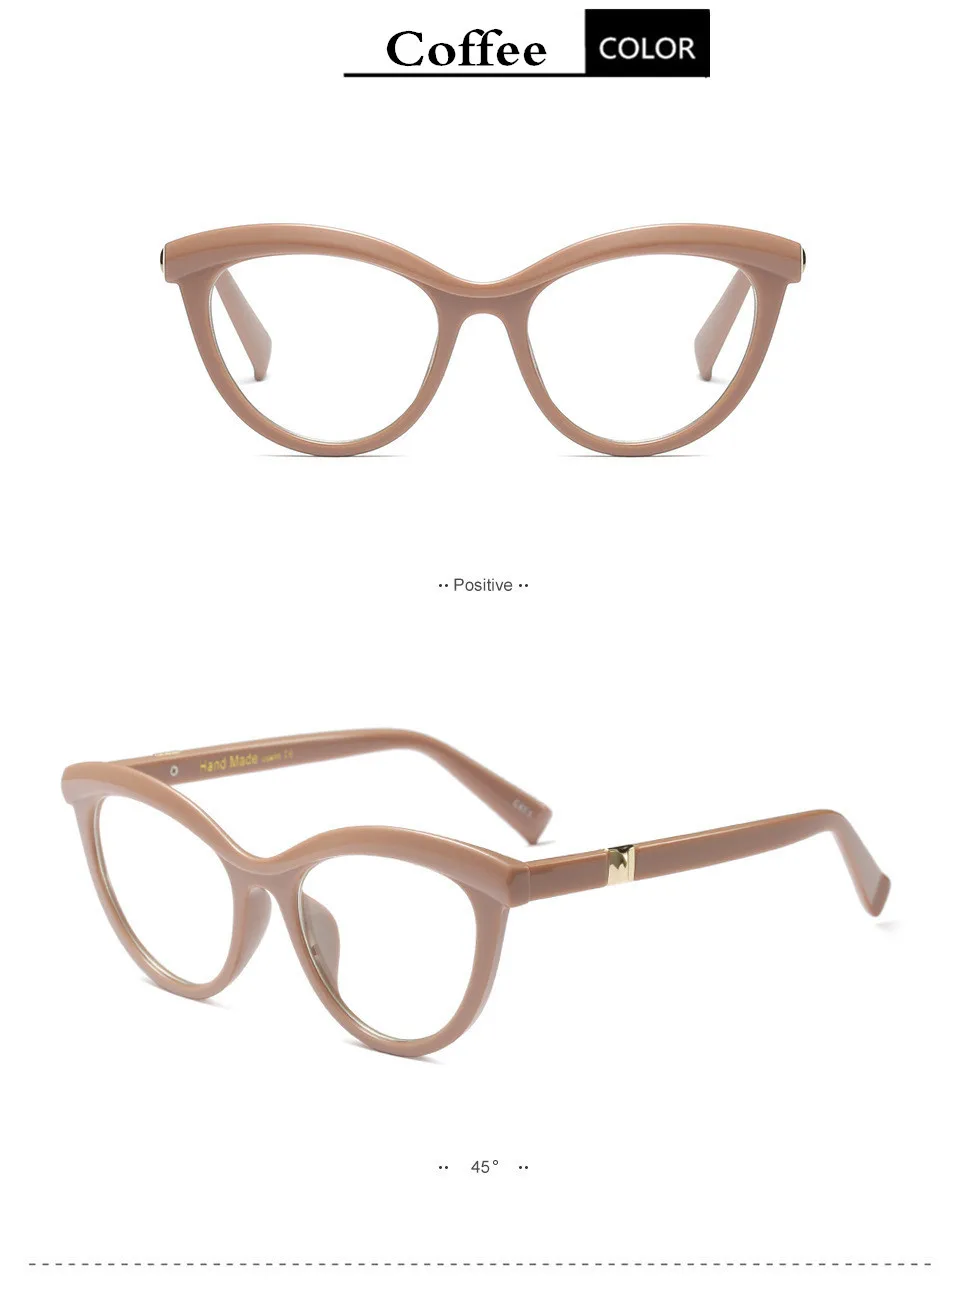 KOTTDO солнцезащитные очки "кошачий глаз", прозрачные очки оптические оправы для очков, очки для глаз для женщин lunette de vue homme